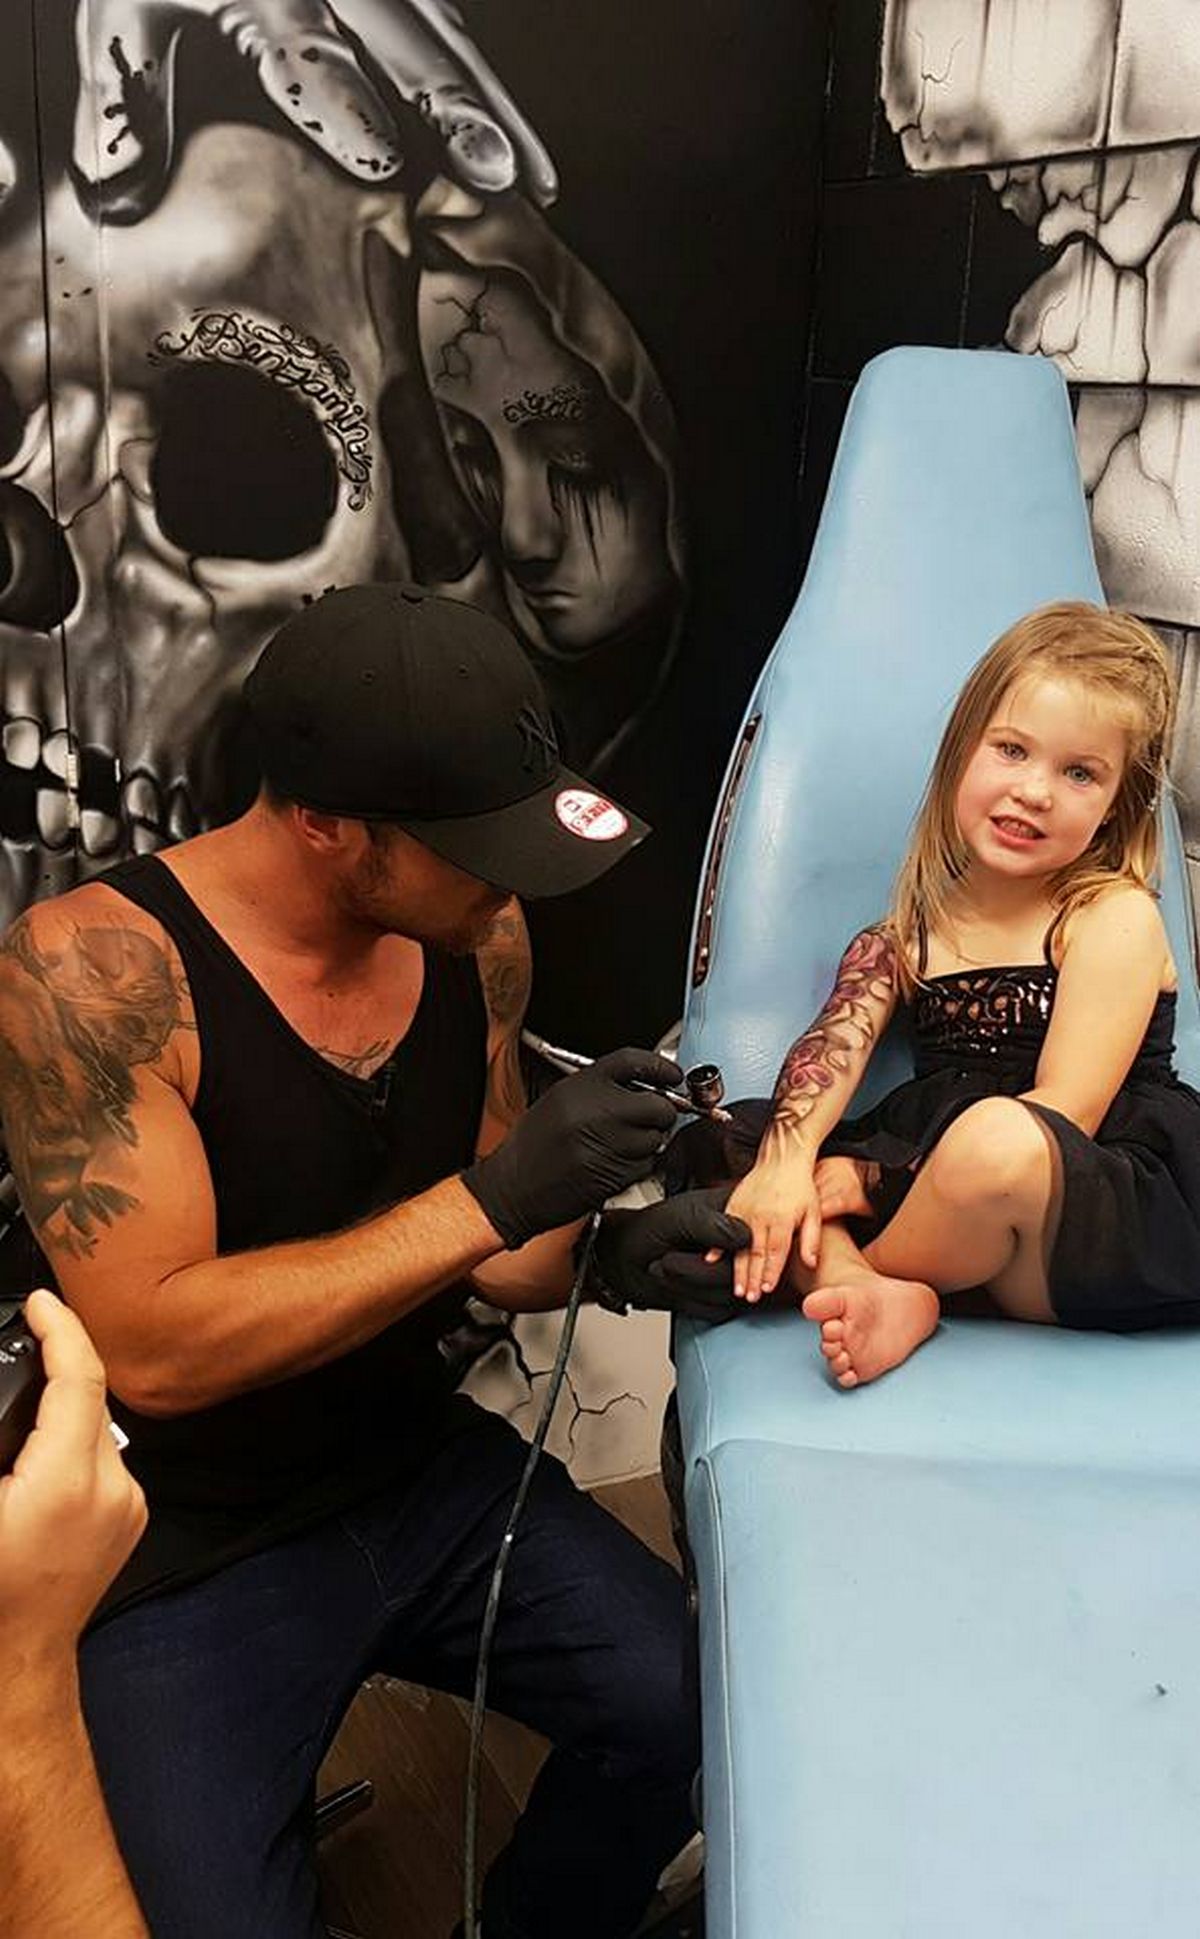 Le tatoueur Benjamin Lloyd réalise des tatouages à l'aérographe sur des enfants, ce qui suscite la controverse.